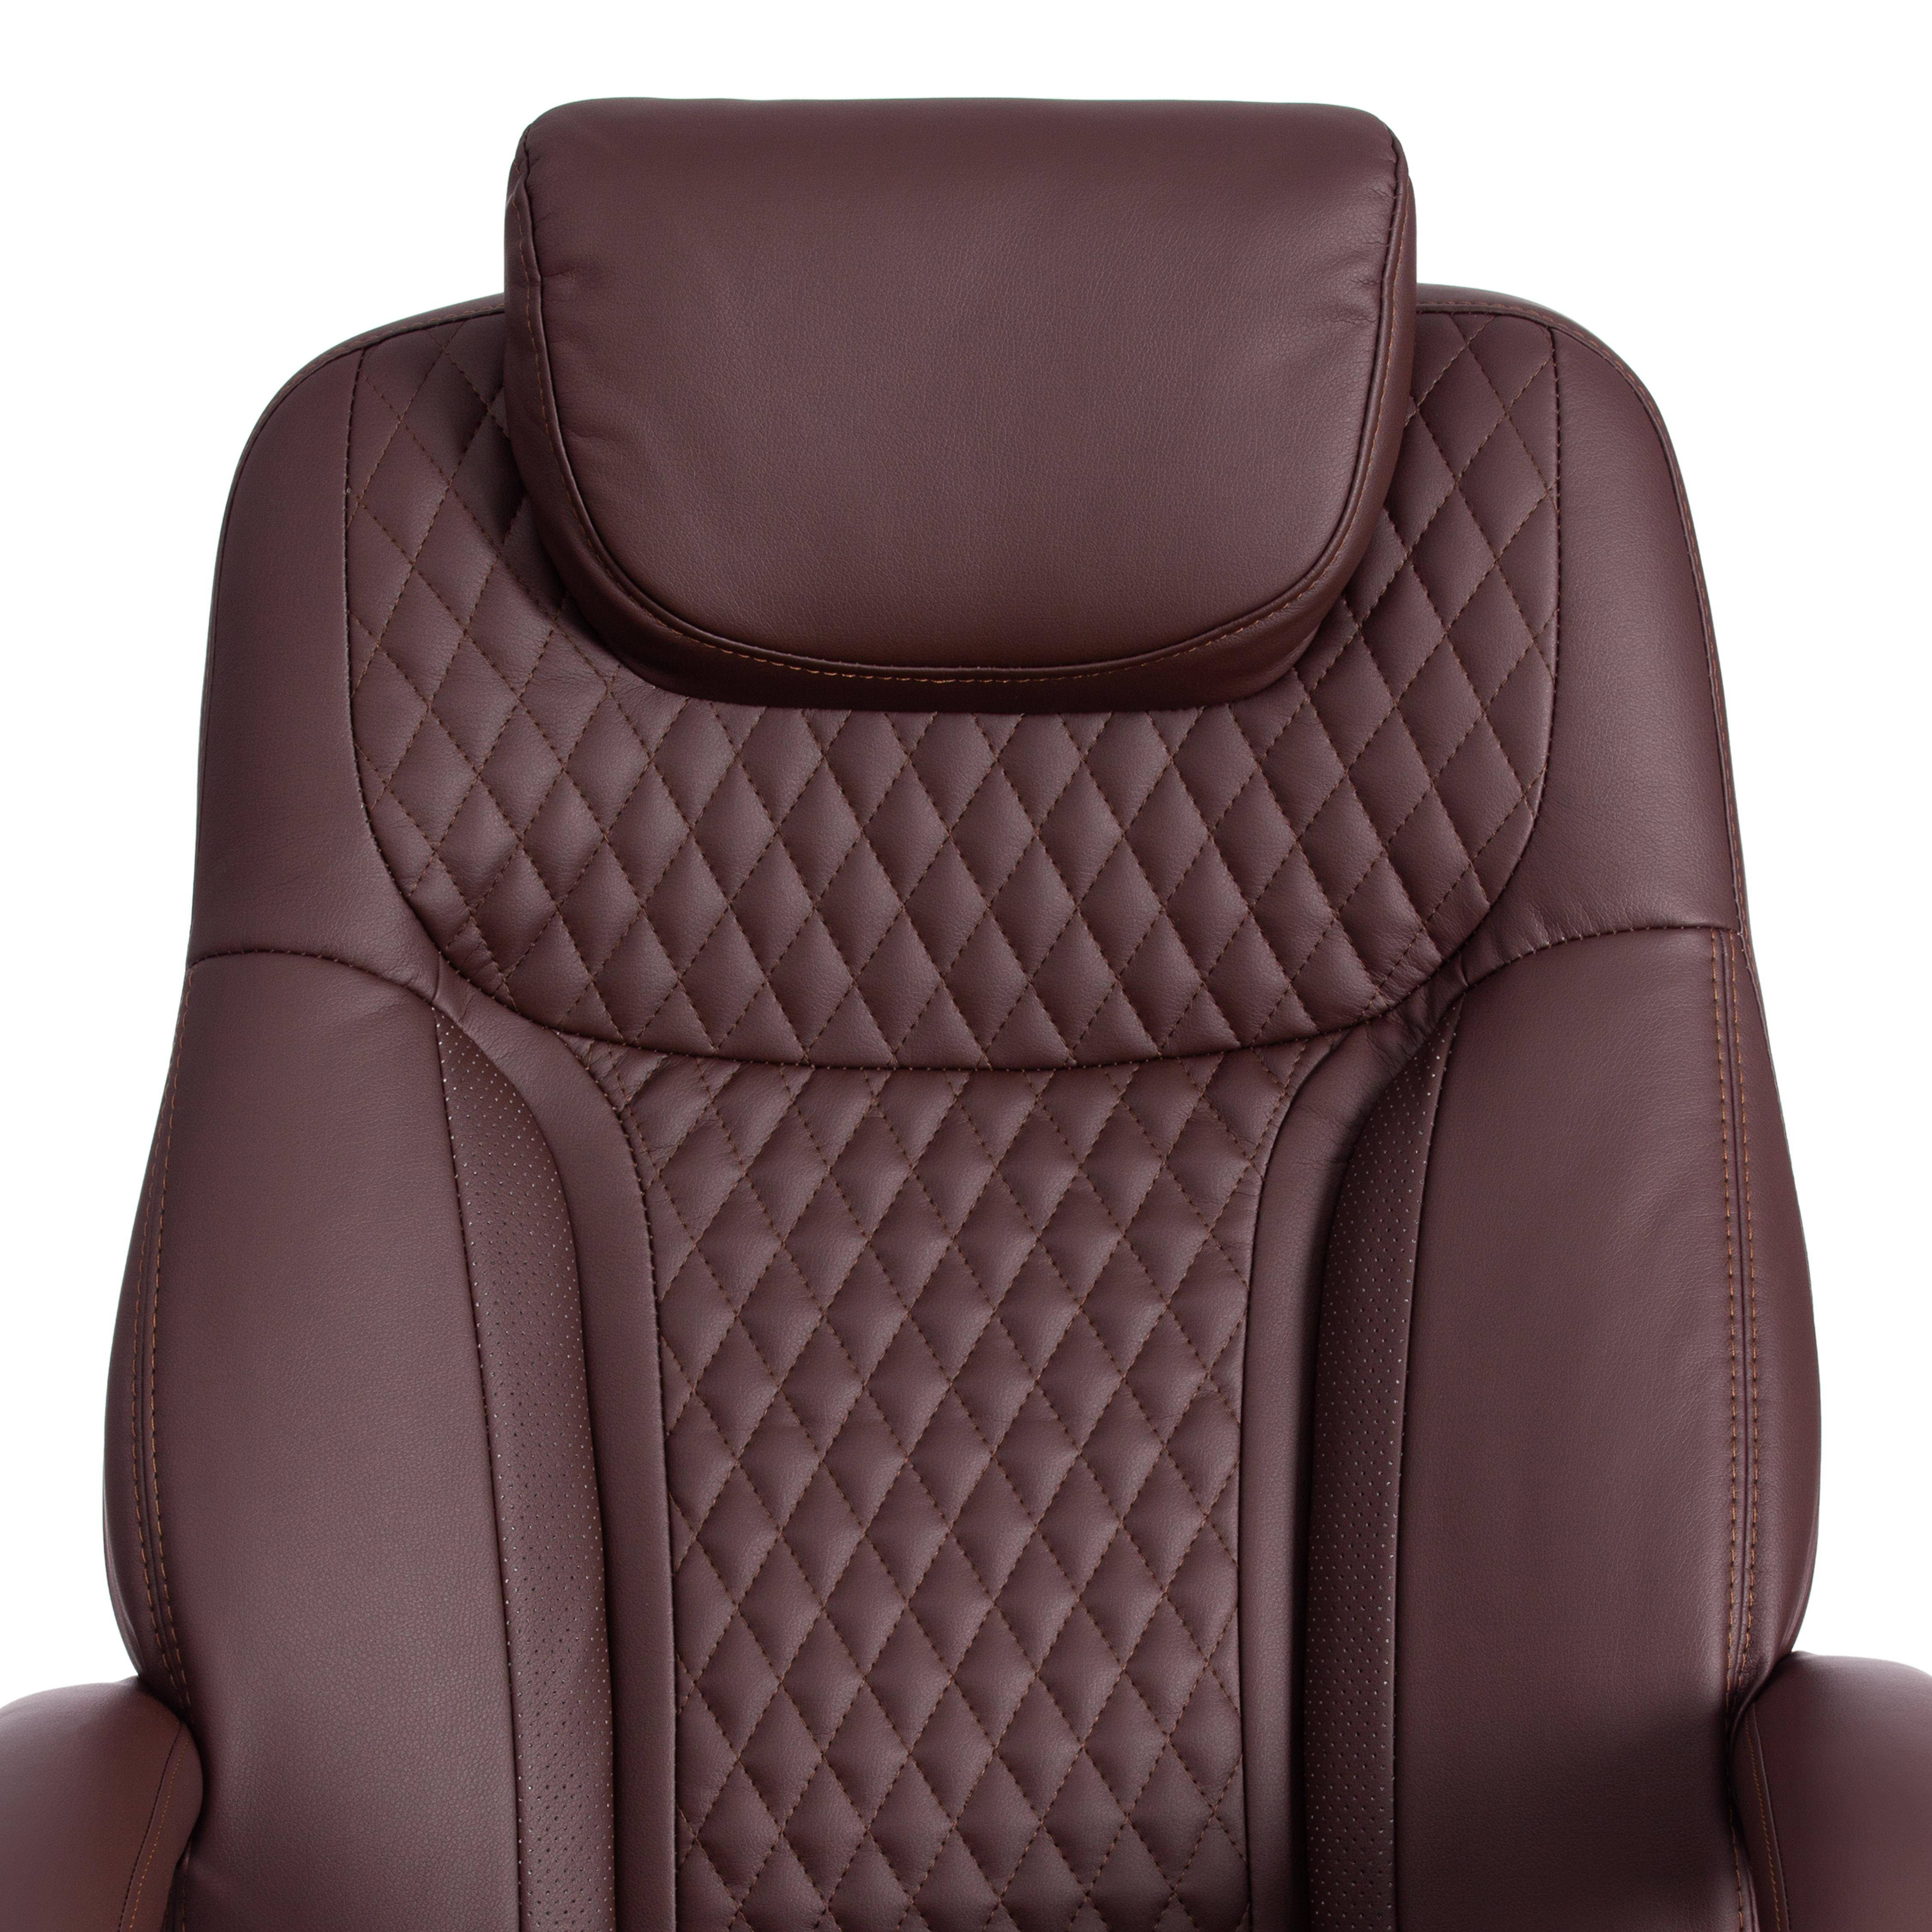 Кресло Trust (max) кож/зам, коричневый/коричневый стеганный/коричневый, 36-36/36-36/6/36-36/06